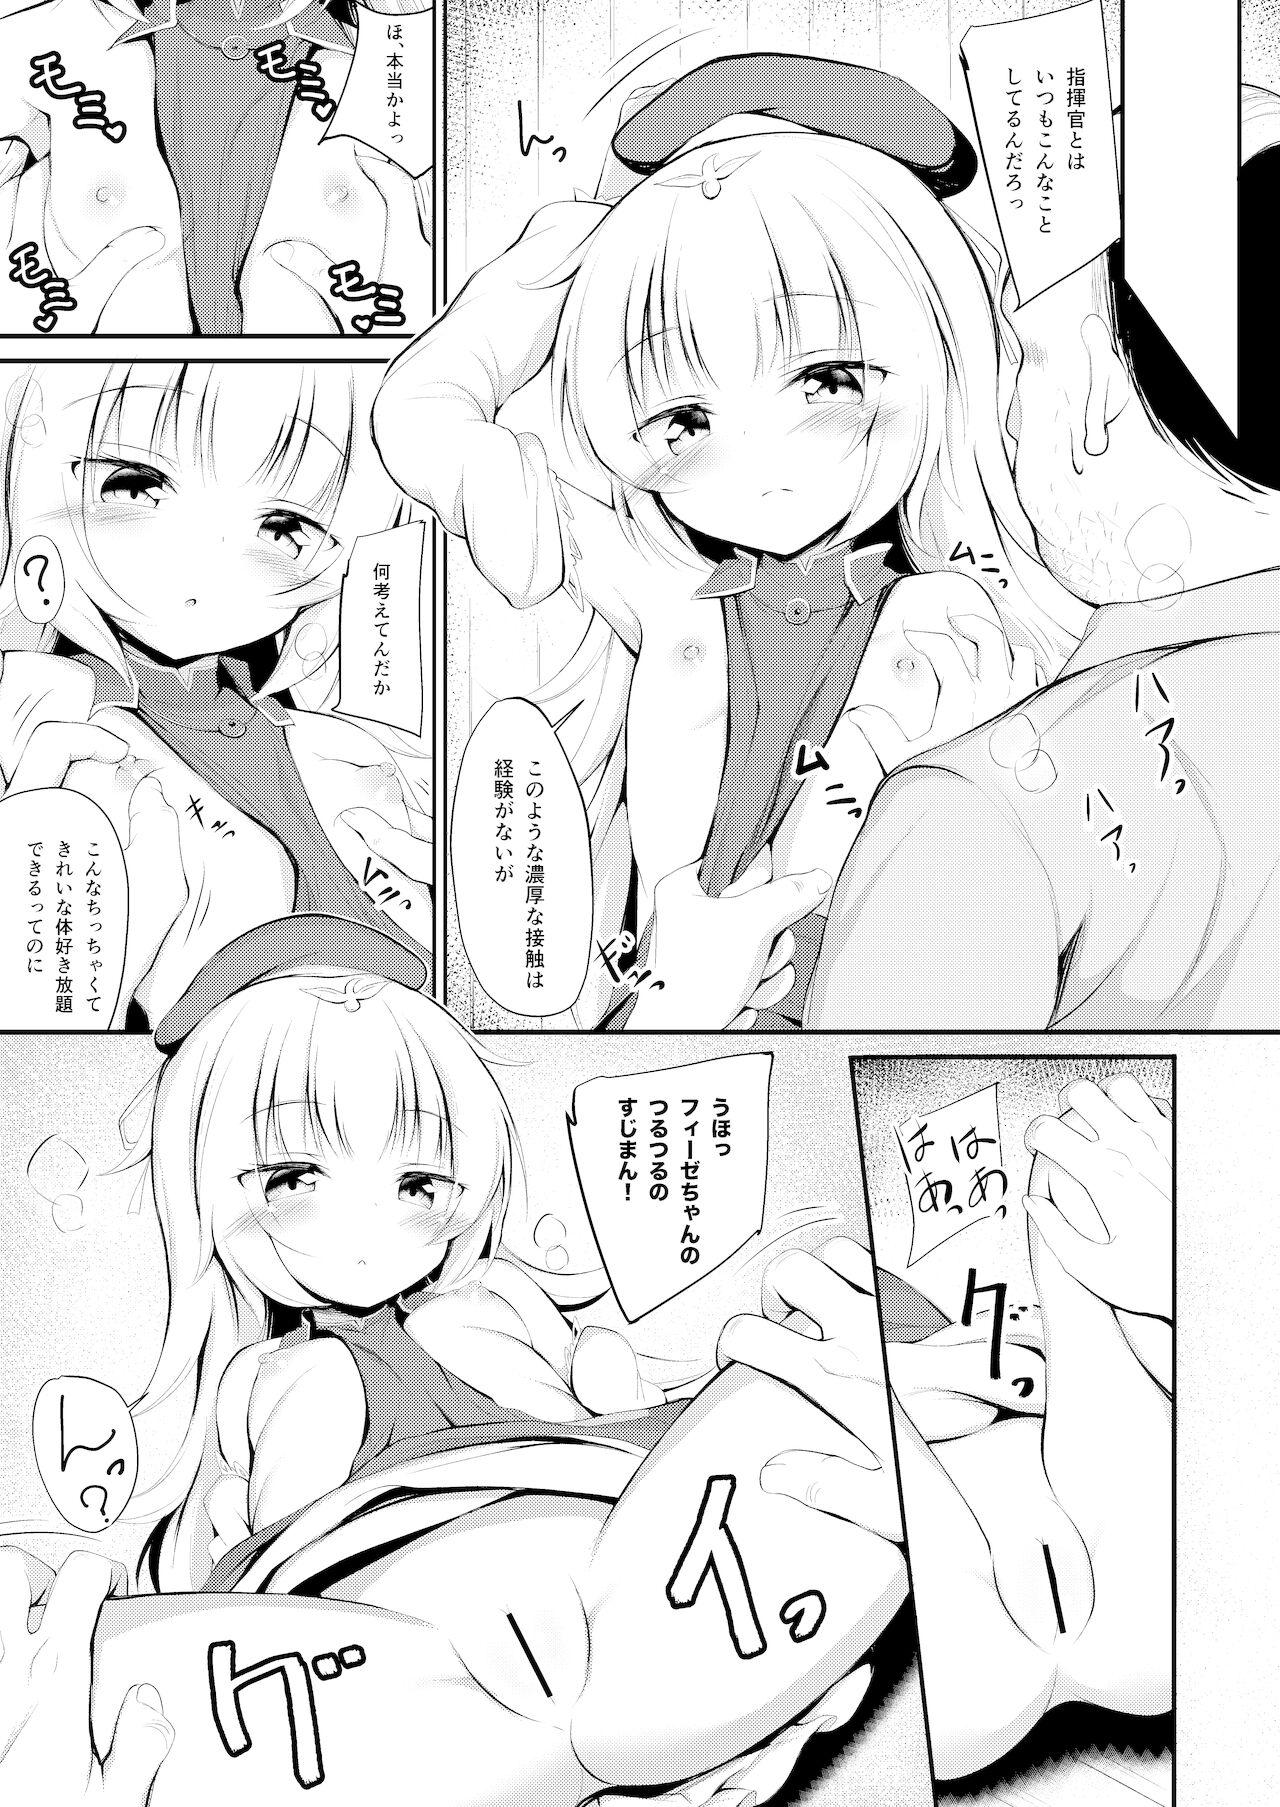 Nuru Otosareta Z46-chan - Azur lane Soapy Massage - Page 6